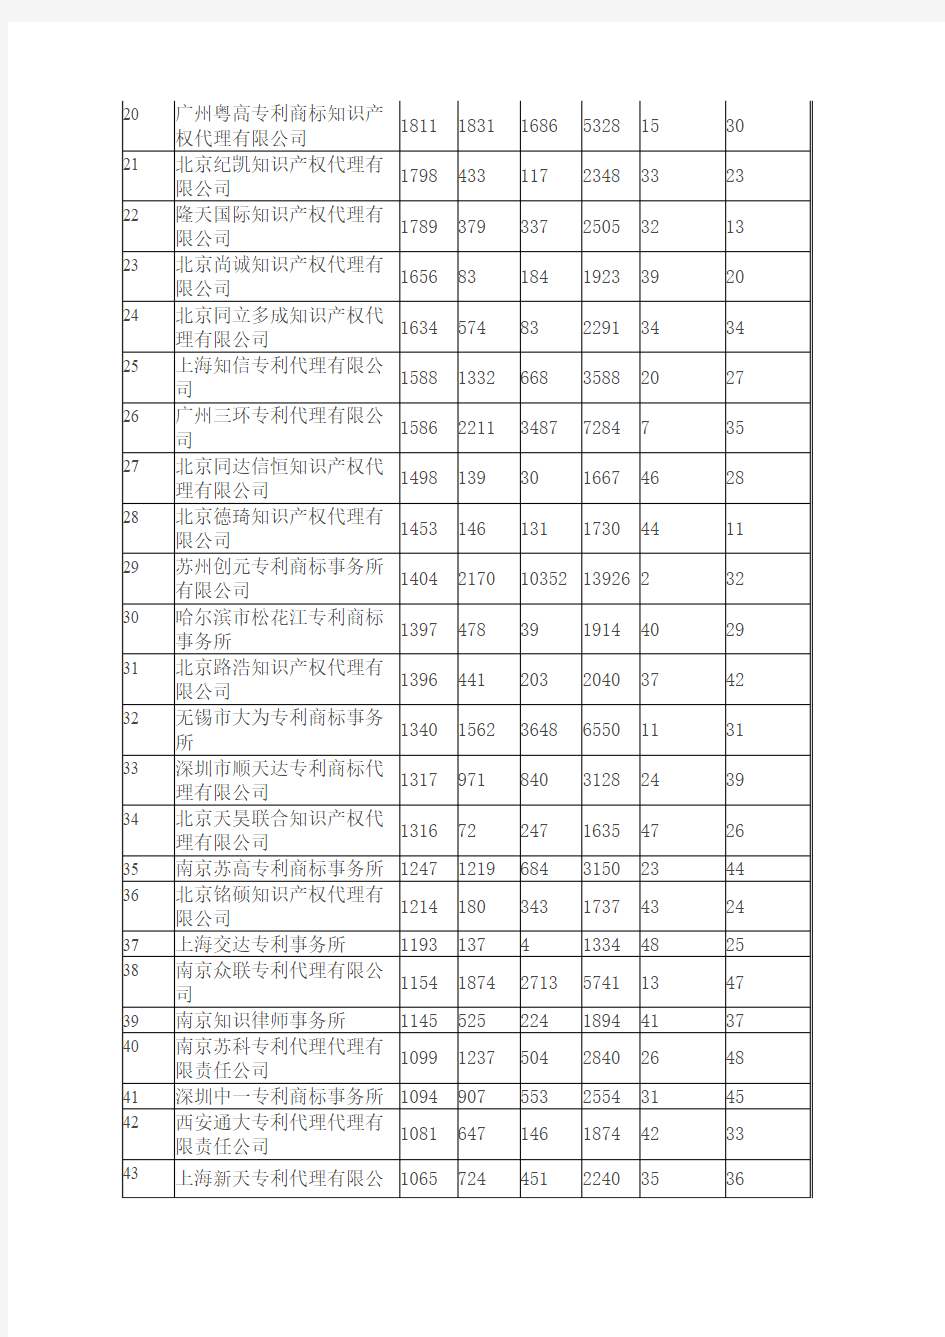 2010年中国专利代理机构专利代理数量排名